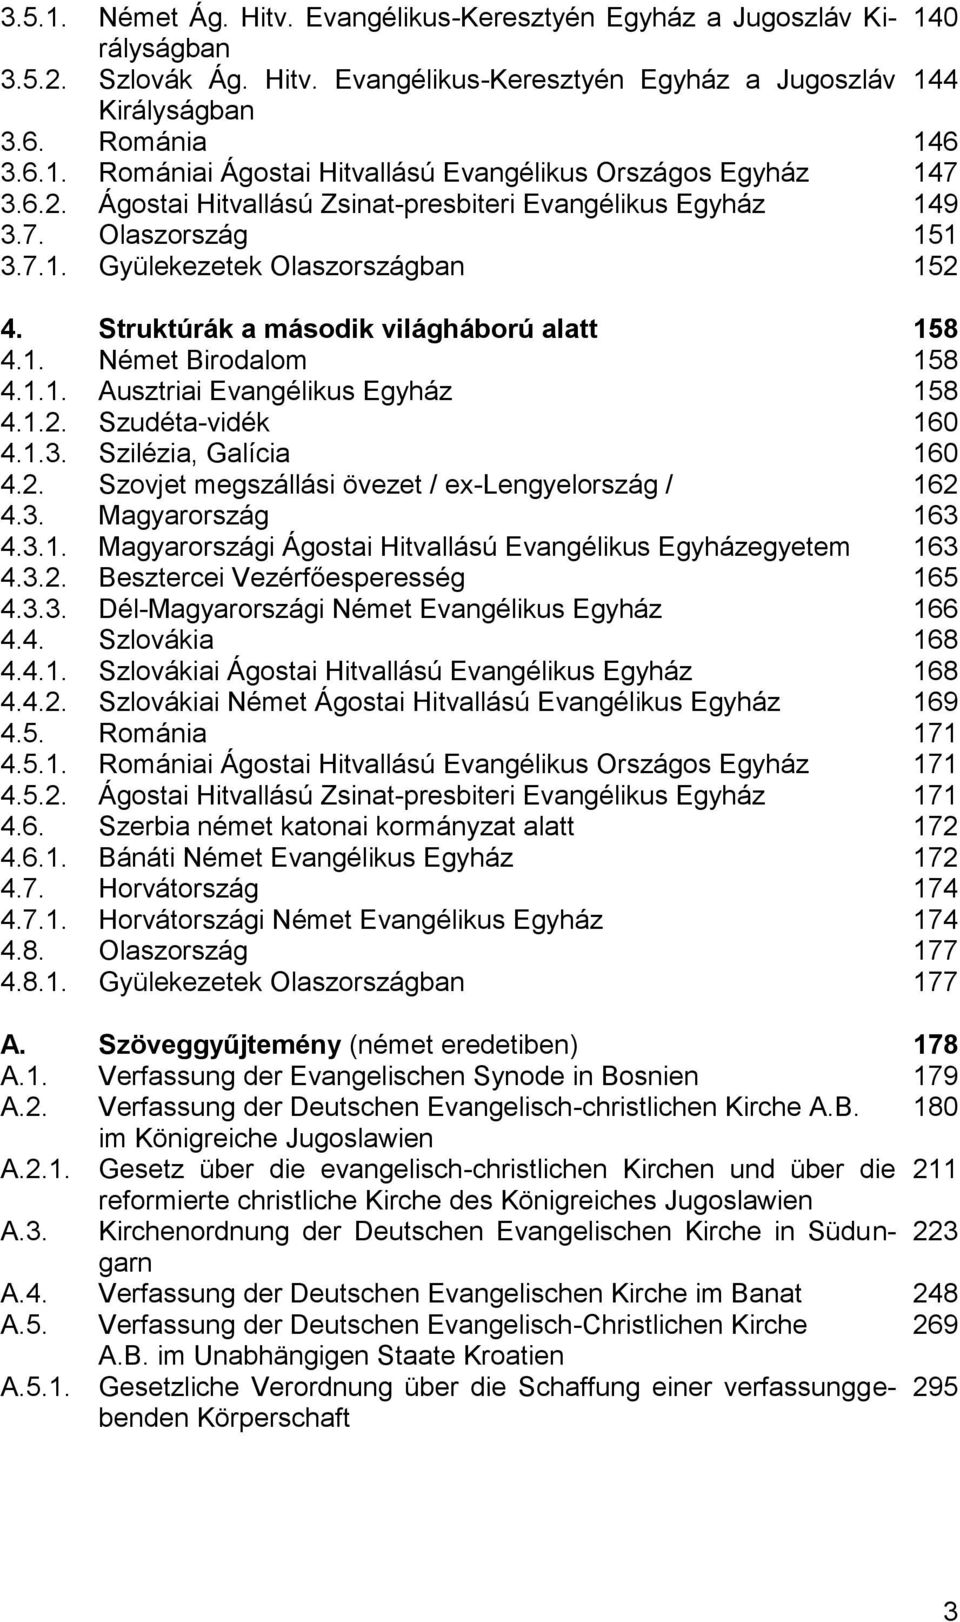 1.2. Szudéta-vidék 160 4.1.3. Szilézia, Galícia 160 4.2. Szovjet megszállási övezet / ex-lengyelország / 162 4.3. Magyarország 163 4.3.1. Magyarországi Ágostai Hitvallású Evangélikus Egyházegyetem 163 4.